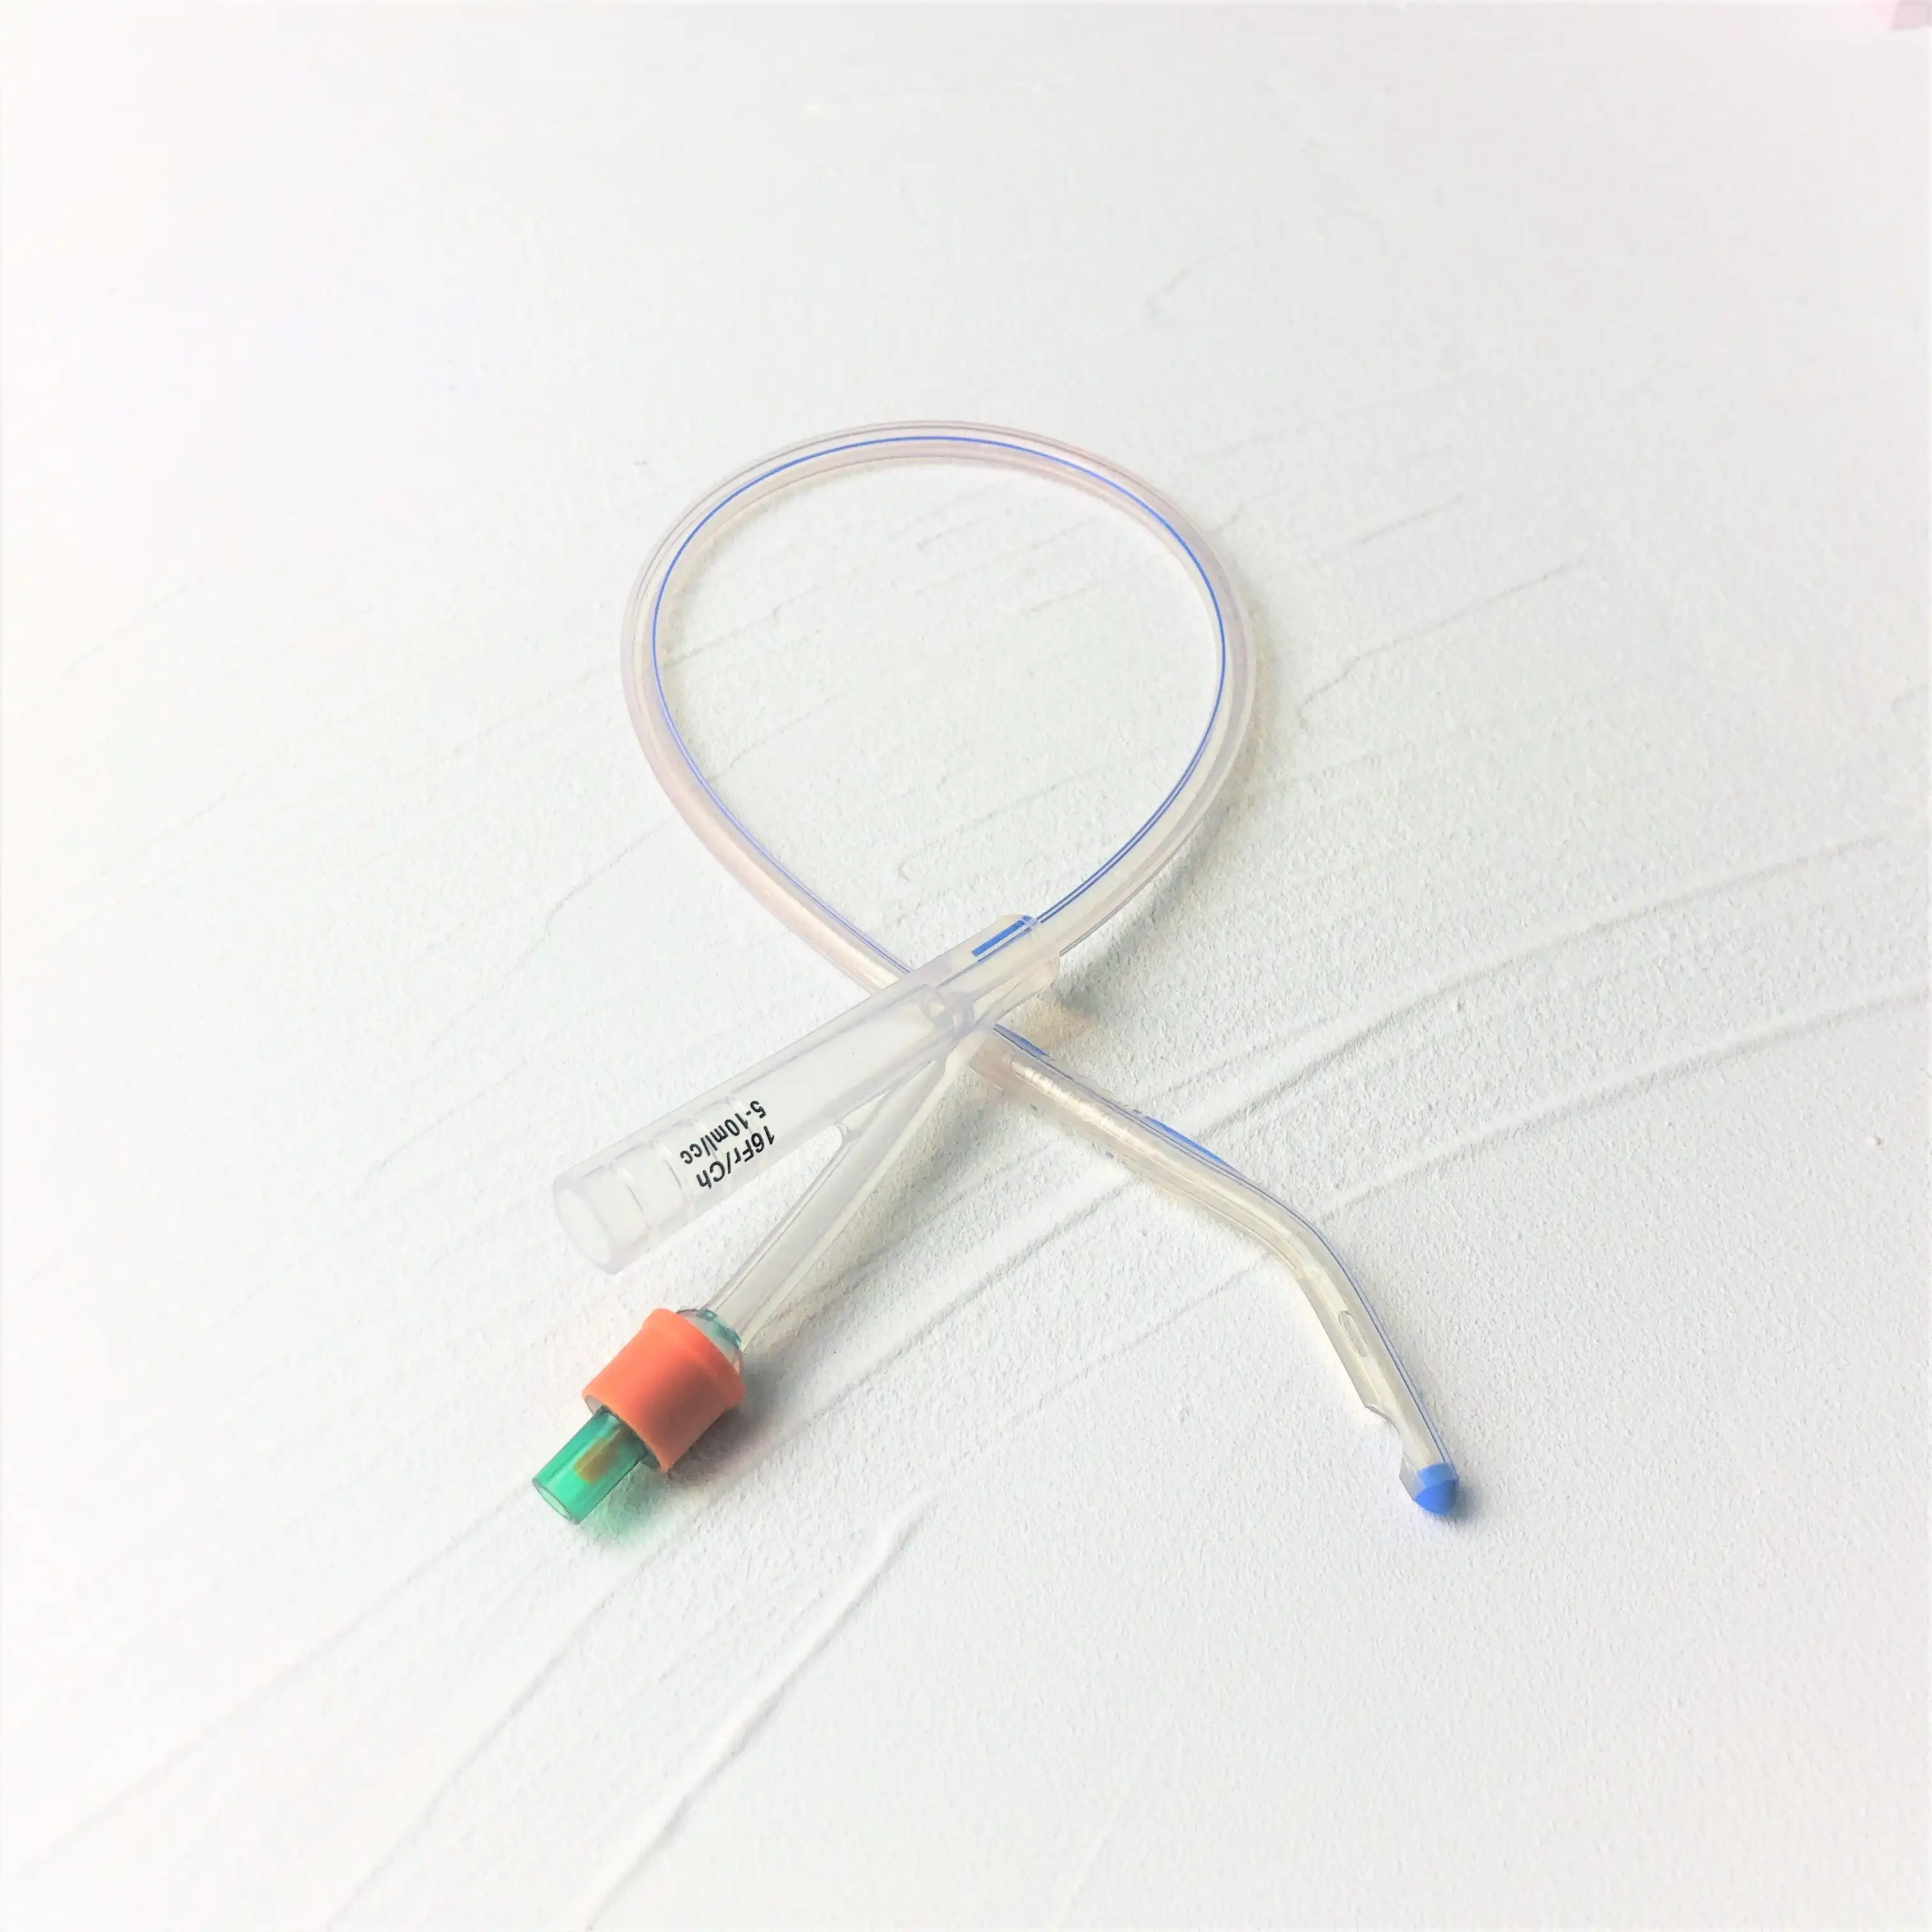 CE Được Phê Duyệt Dùng Một Lần Tất Cả Silicone Foley Catheter Với Dufour Tip Hai Cách Ba Cách Tất Cả Silicone Niệu Đạo Catheter